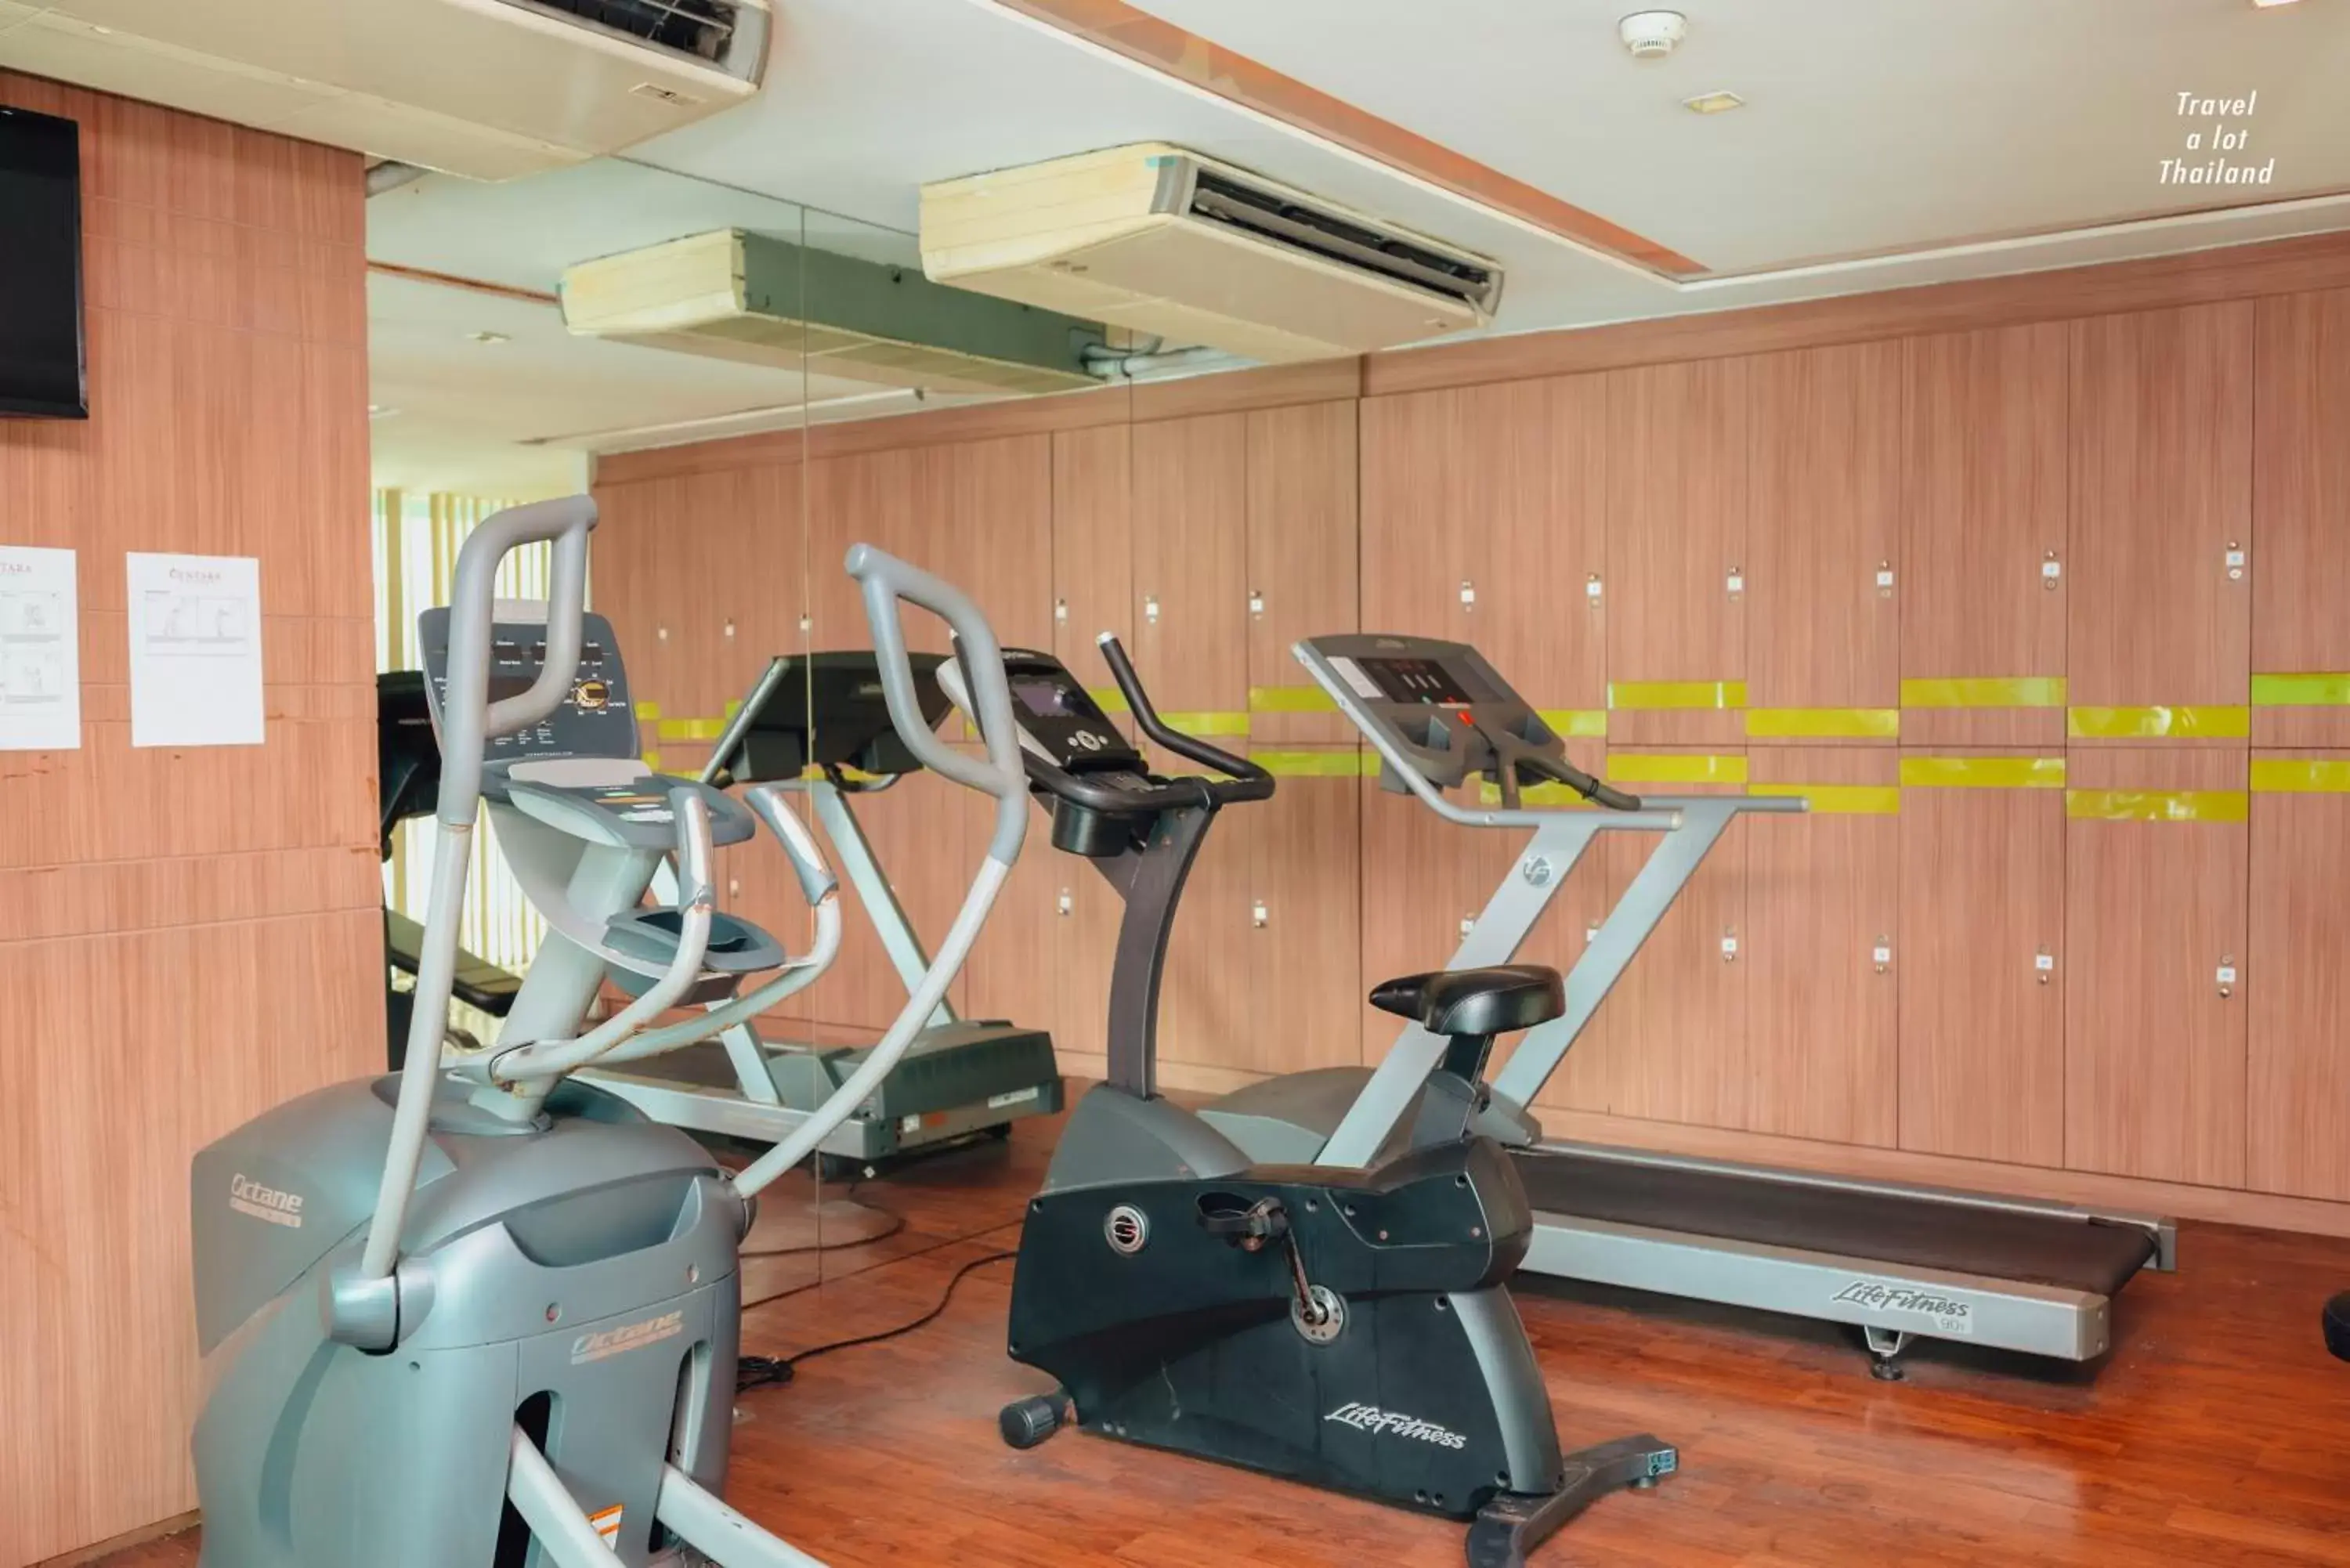 Fitness centre/facilities, Fitness Center/Facilities in Centara Pattaya Hotel